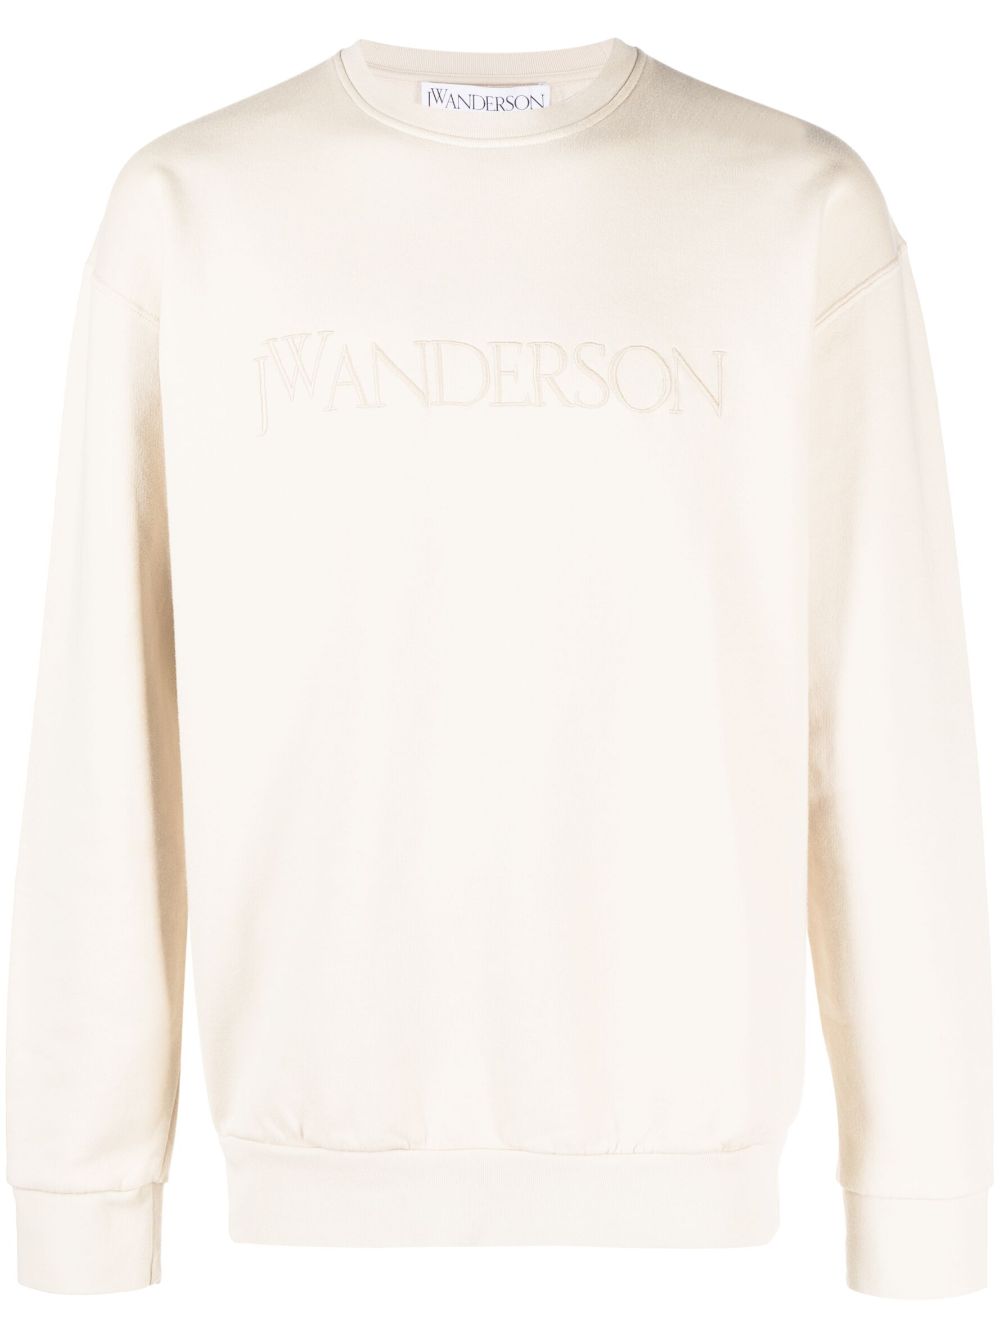 JW Anderson logo-embroidered cotton sweatshirt - Neutrals von JW Anderson